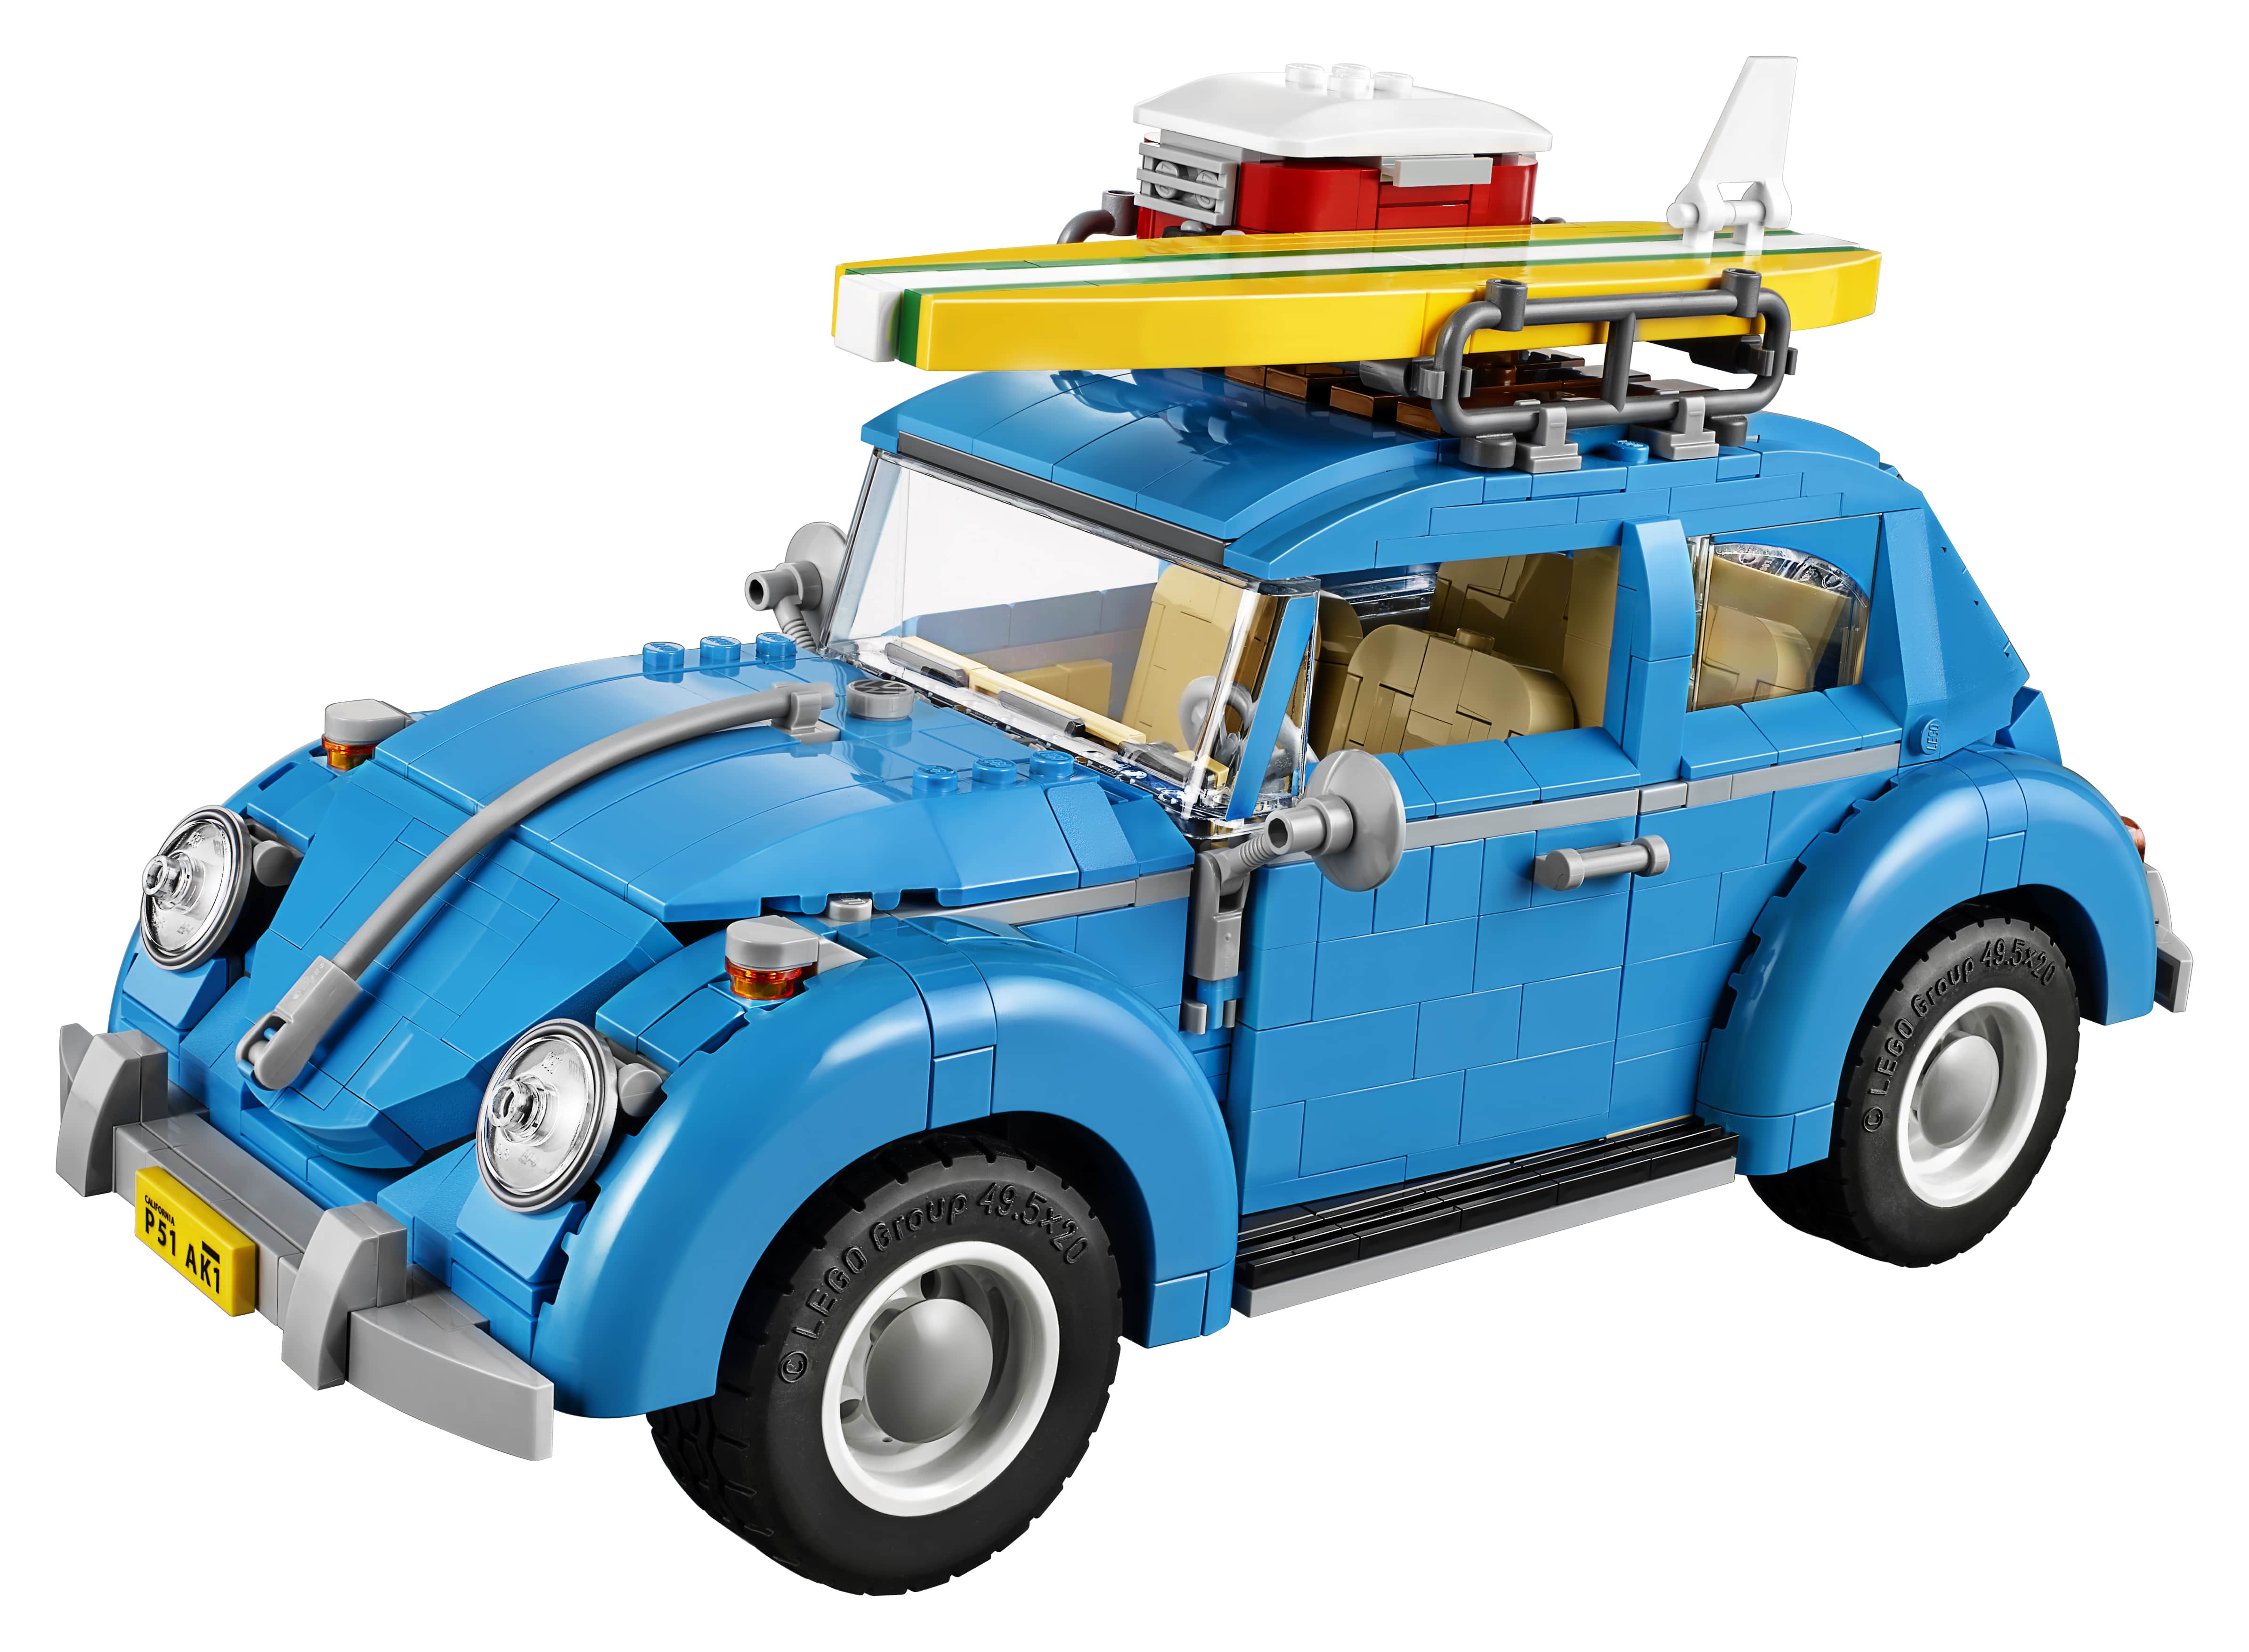 Lego 10252 Volkswagen Beetle Front View Min